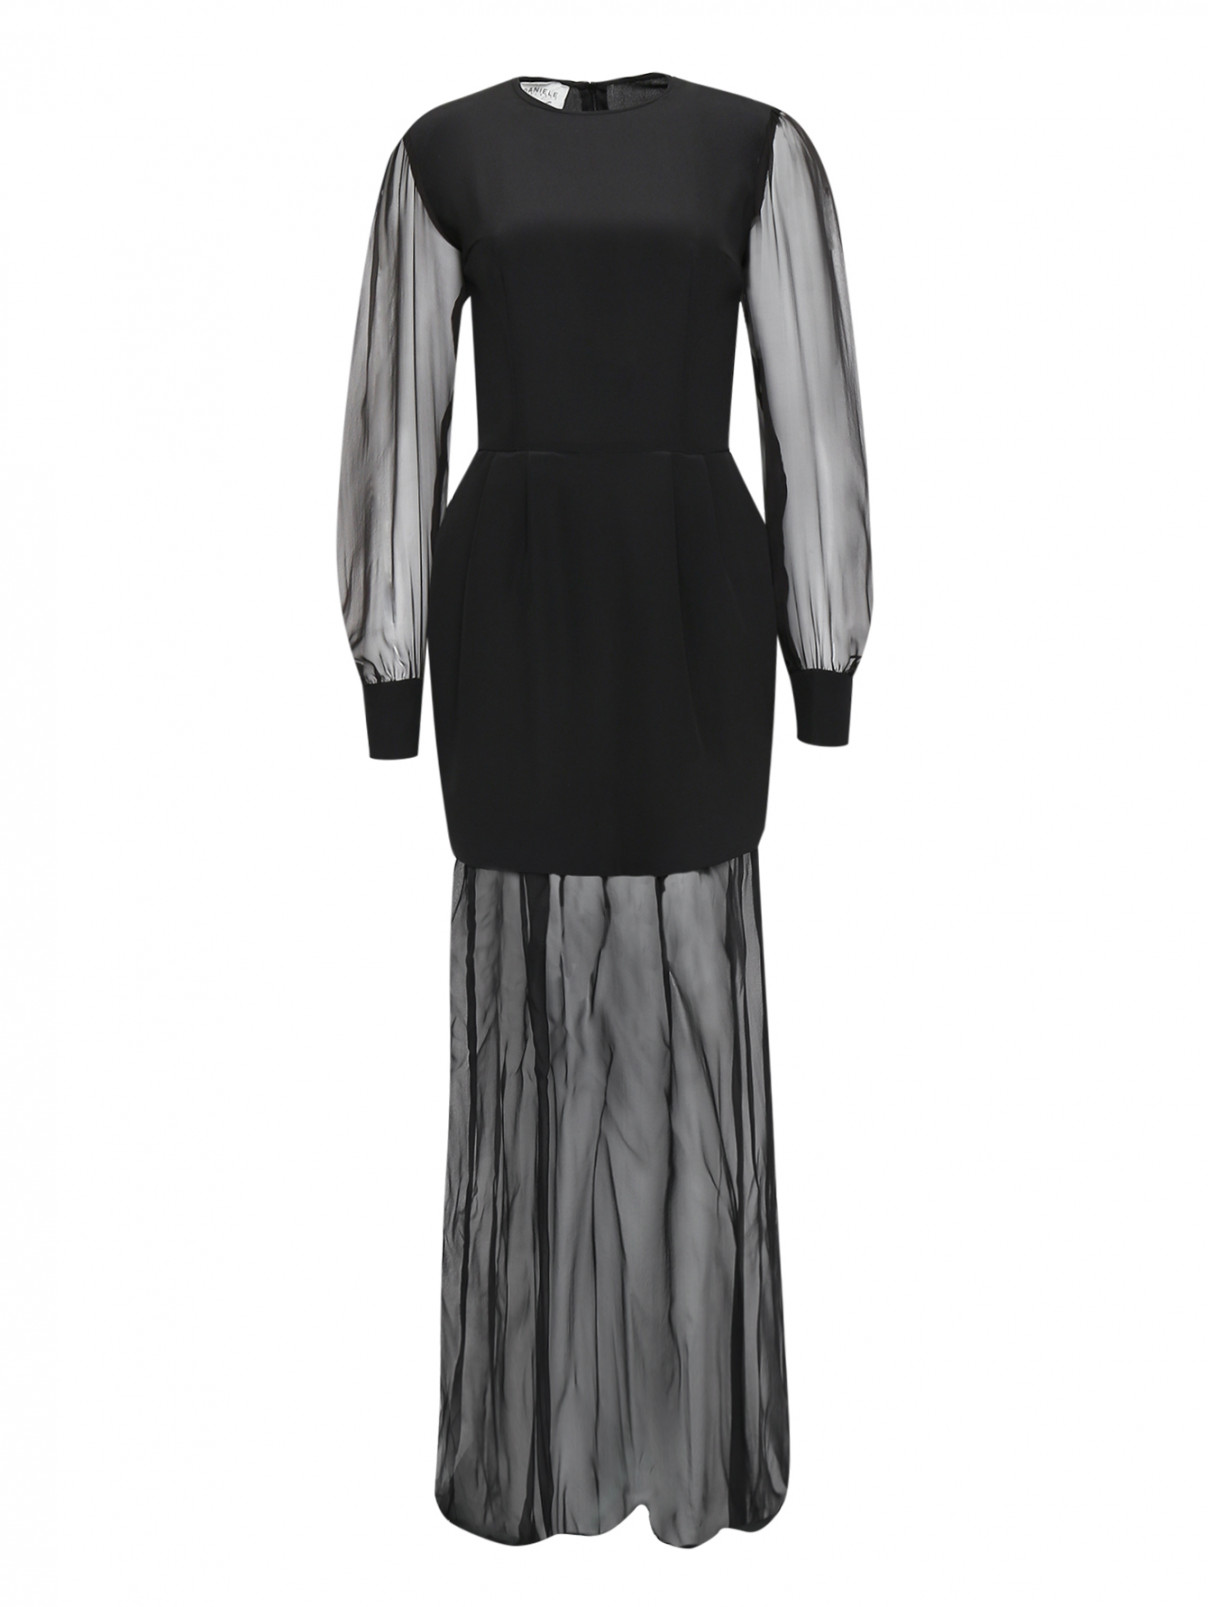 Шелковое платье-макси с длинным рукавом Daniele Carlotta  –  Общий вид  – Цвет:  Черный